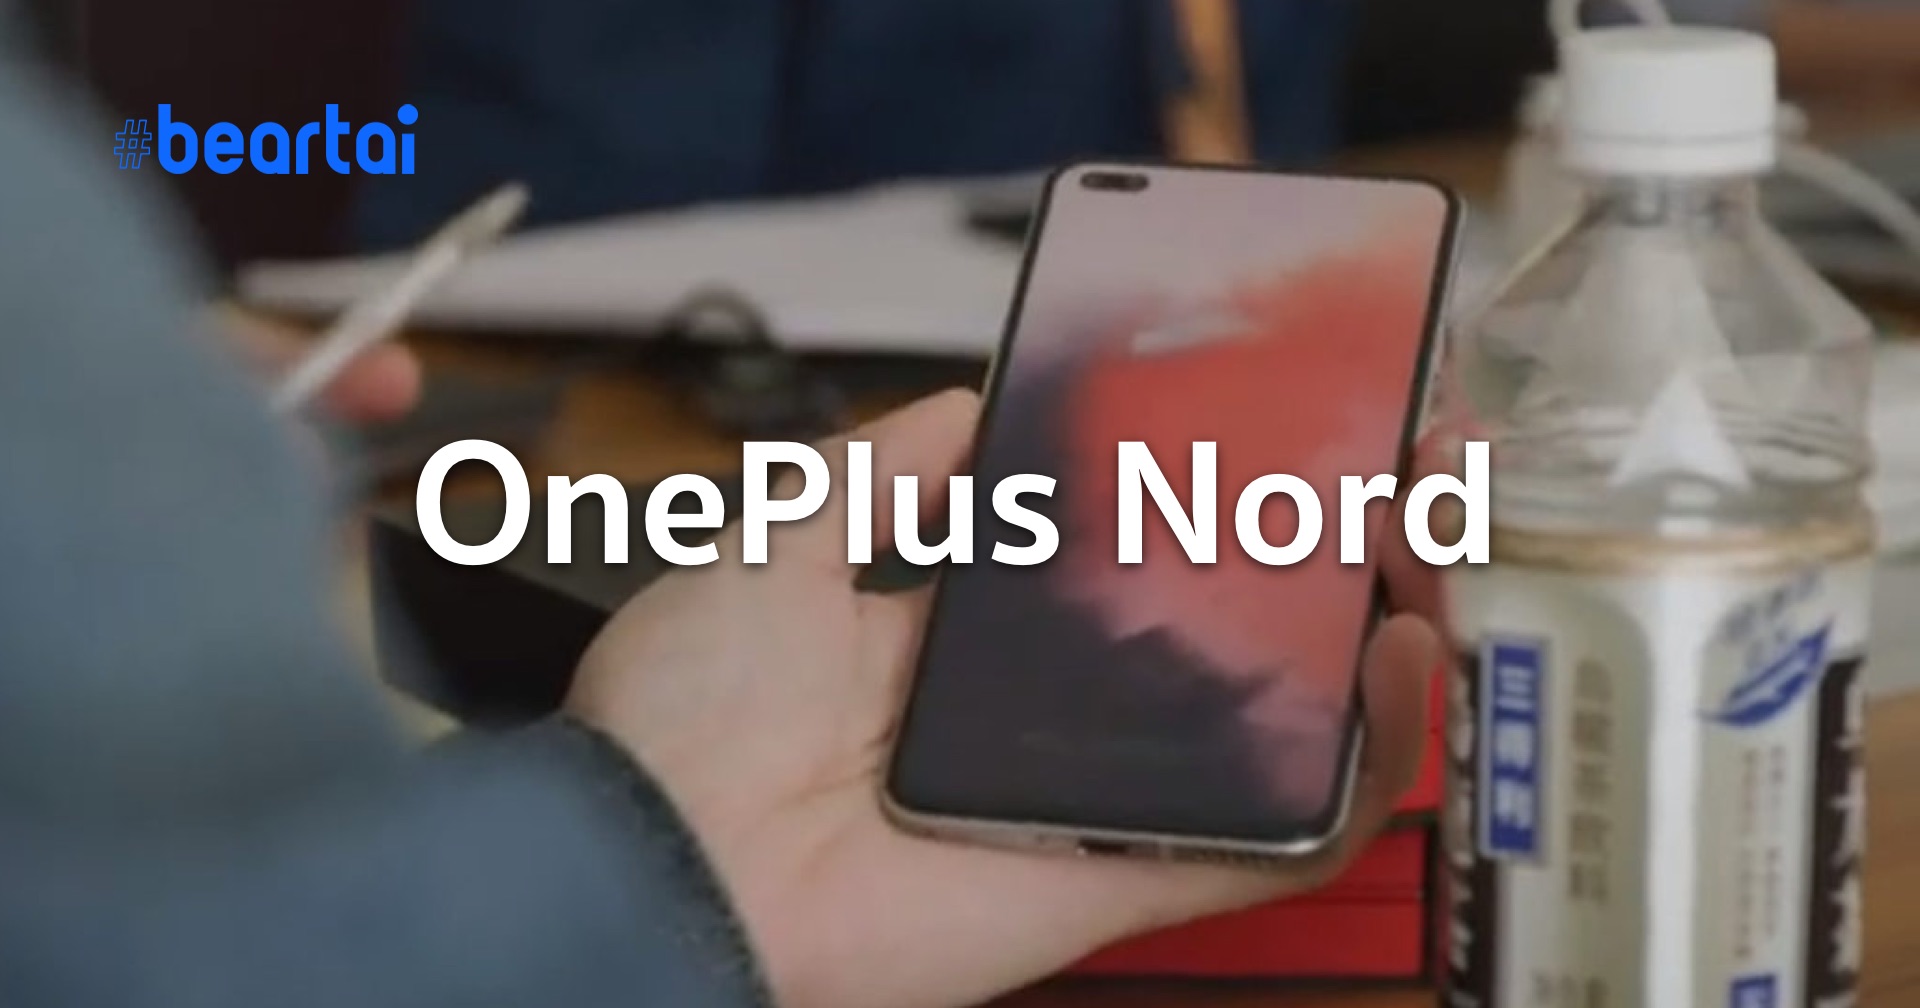 หลุดสเปก OnePlus Nord แบบหมดเปลือก ก่อนเปิดตัว 21 ก.ค. นี้